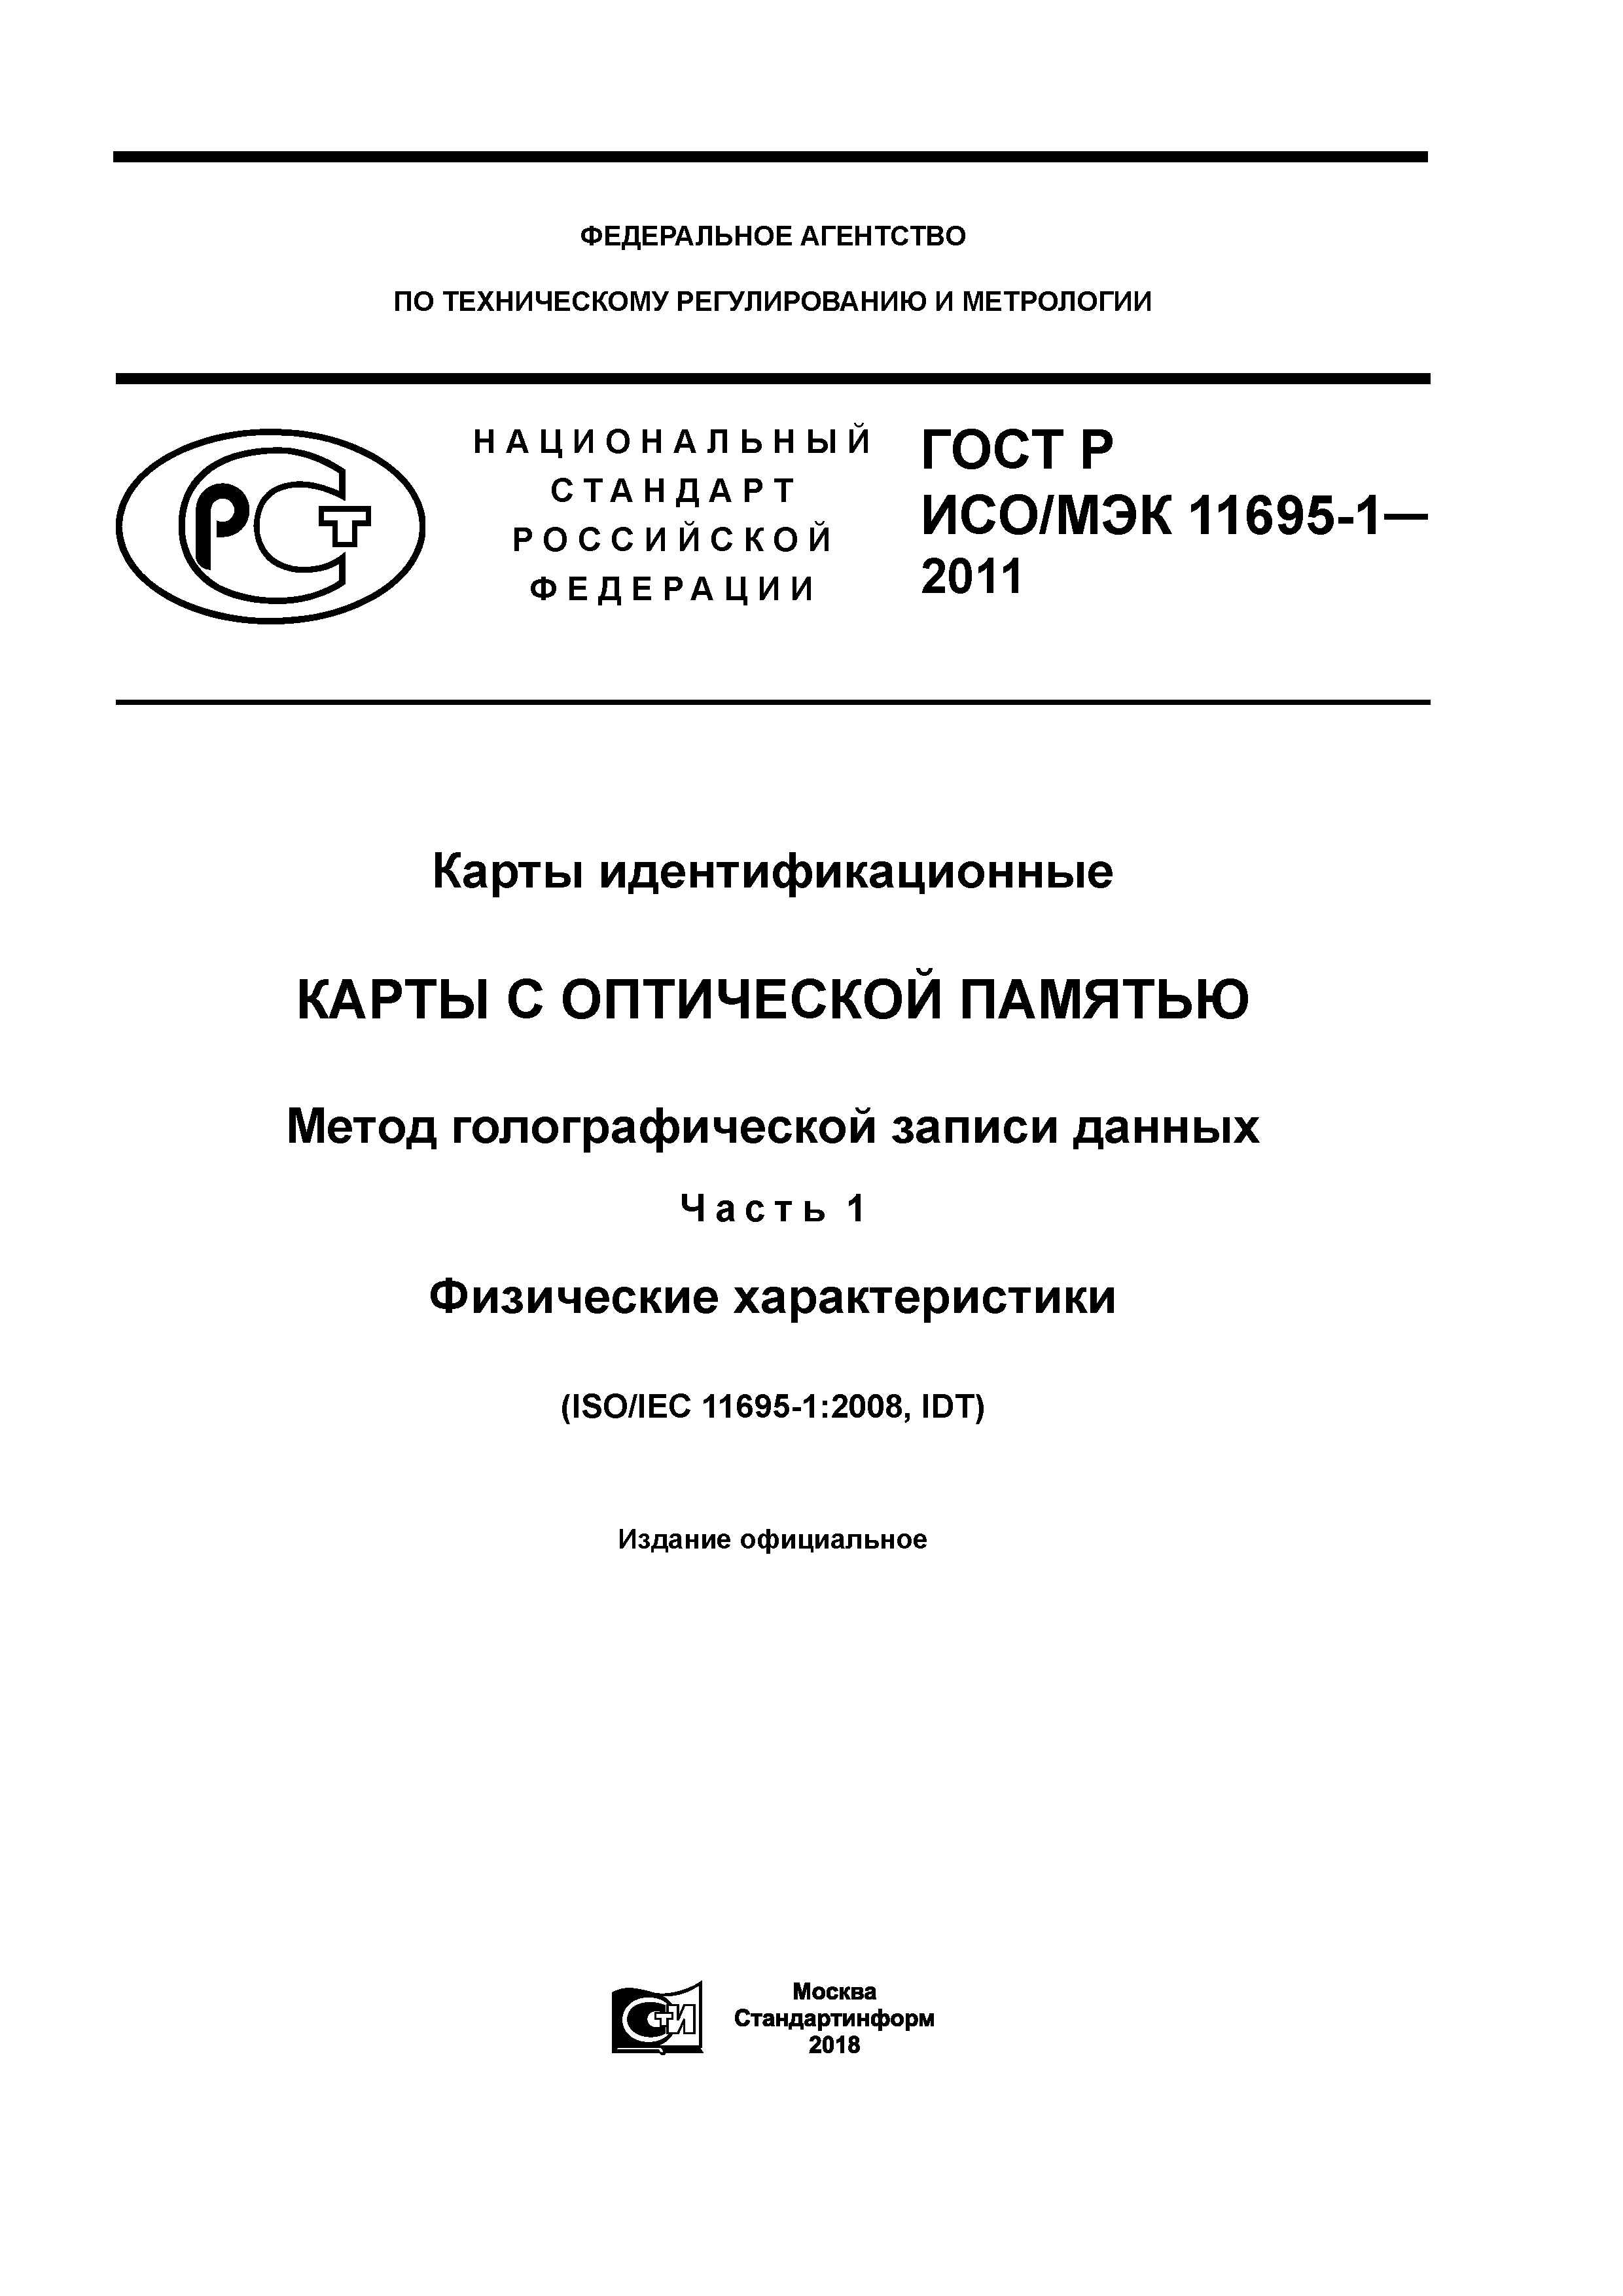 ГОСТ Р ИСО/МЭК 11695-1-2011